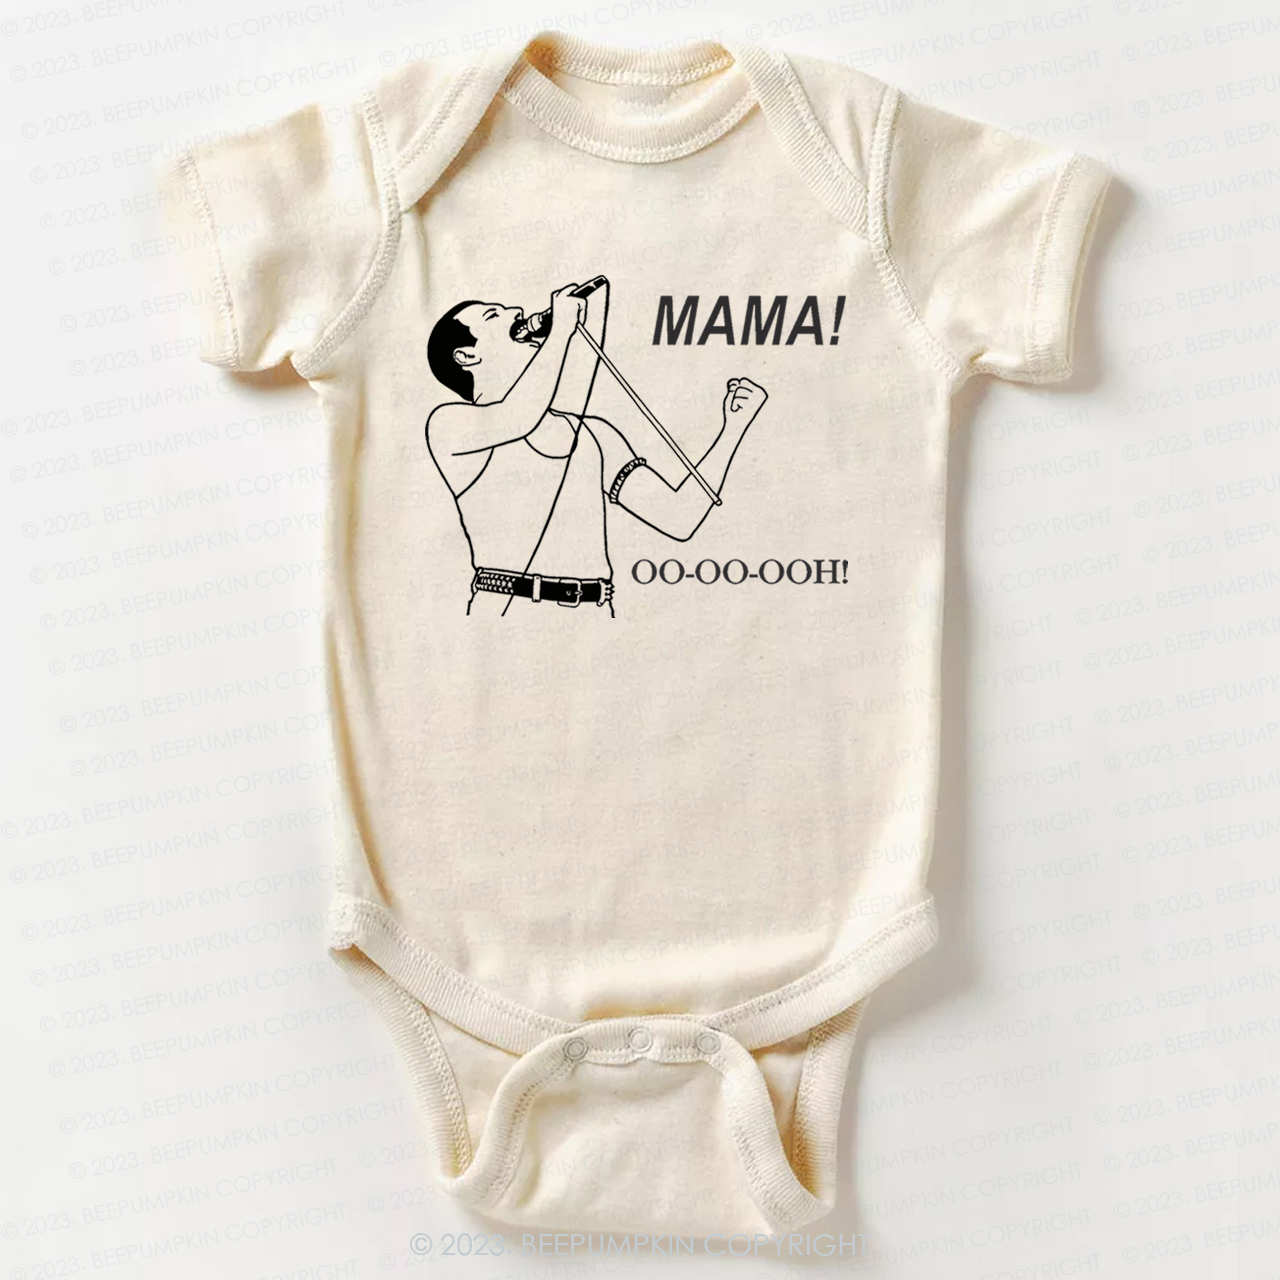 Mama Oo - Oo - Ooh - Queen Bodysuit For Baby